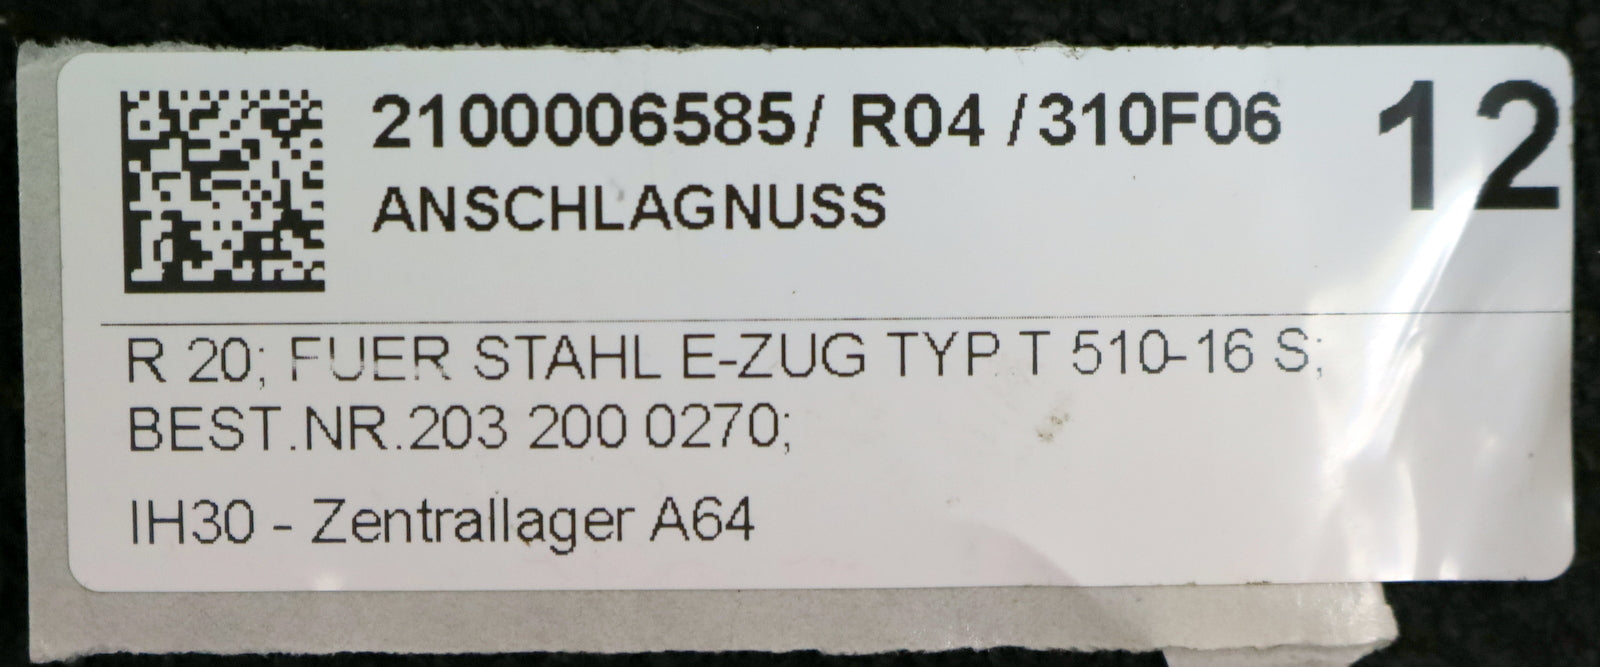 STAHL Anschlagnuss für E-Zug Tpy t 510-16 S Best.Nr. 2032000270 - unbenutzt